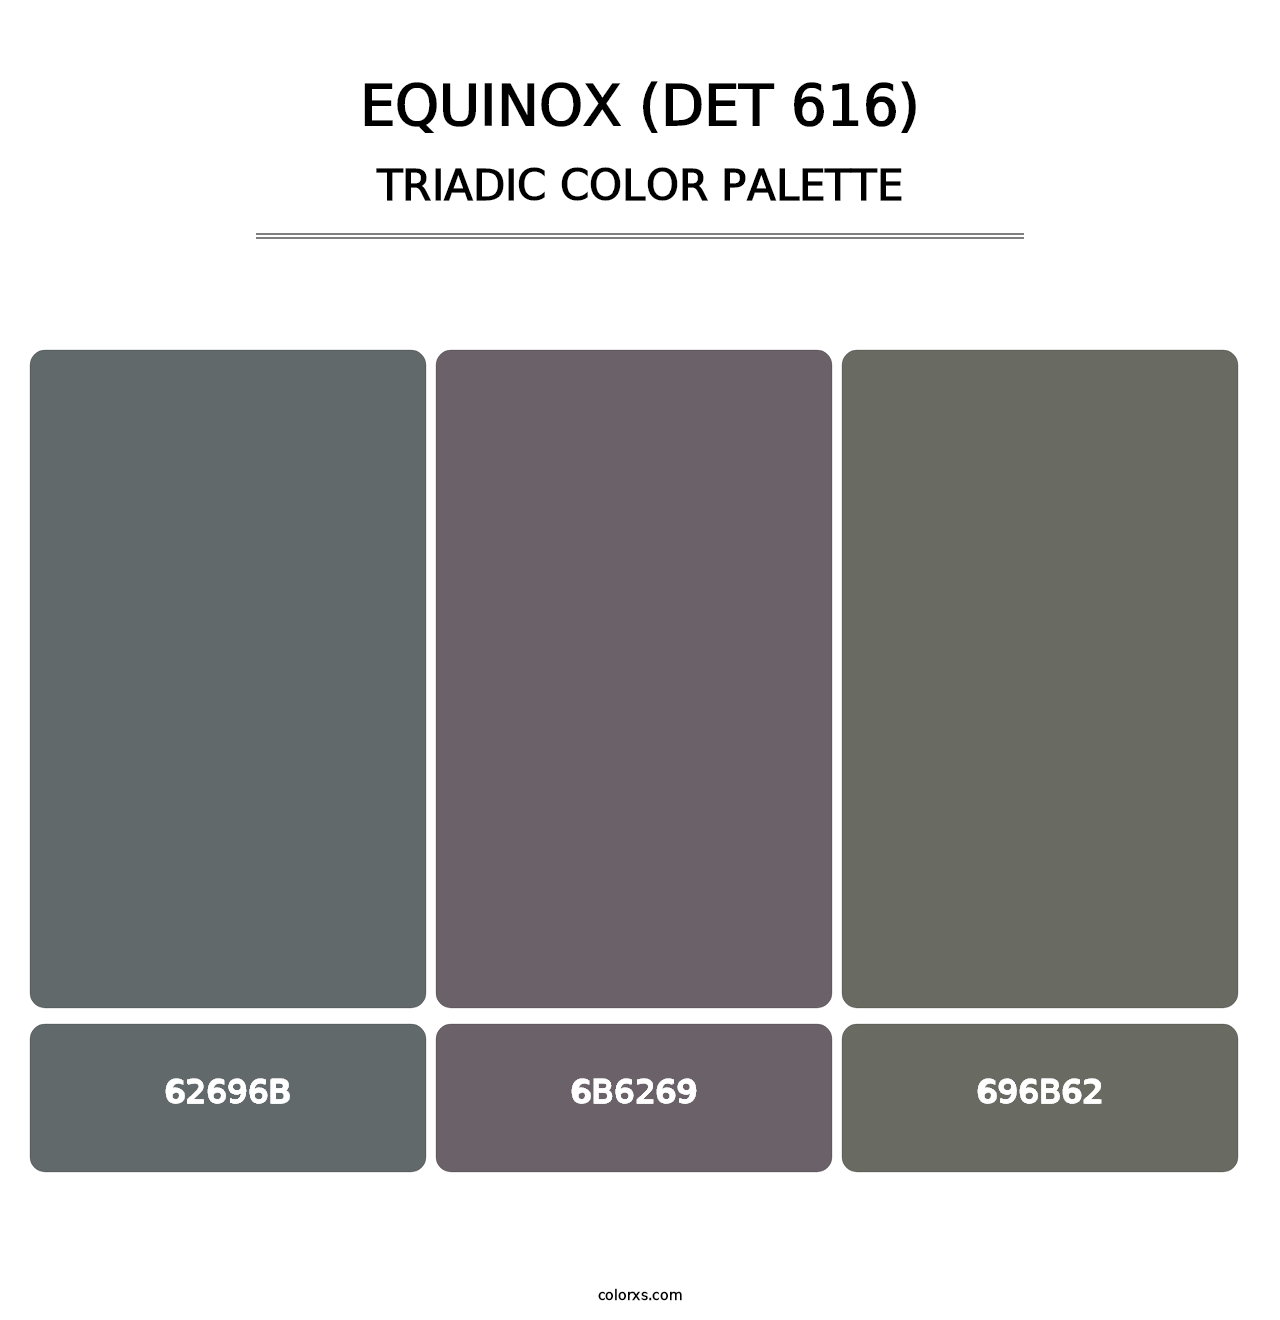 Equinox (DET 616) - Triadic Color Palette